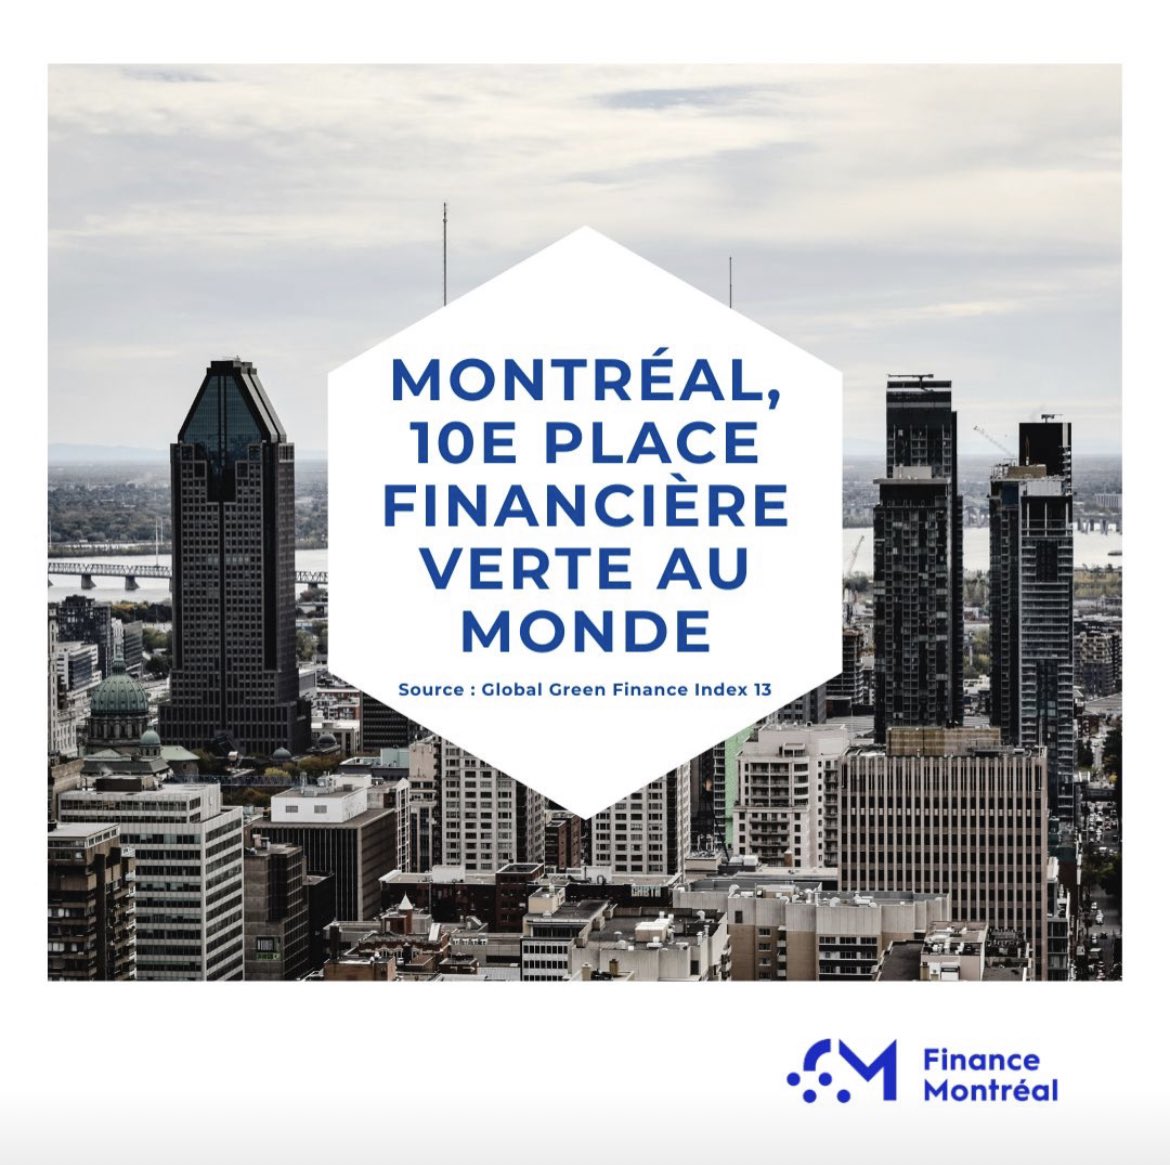 Montréal entre dans le top 10 mondial des places financières durables! #polmtl @FinanceMontreal @Fondaction @FondsFTQ @DesjardinsCoop tinyurl.com/2v4m6z2t